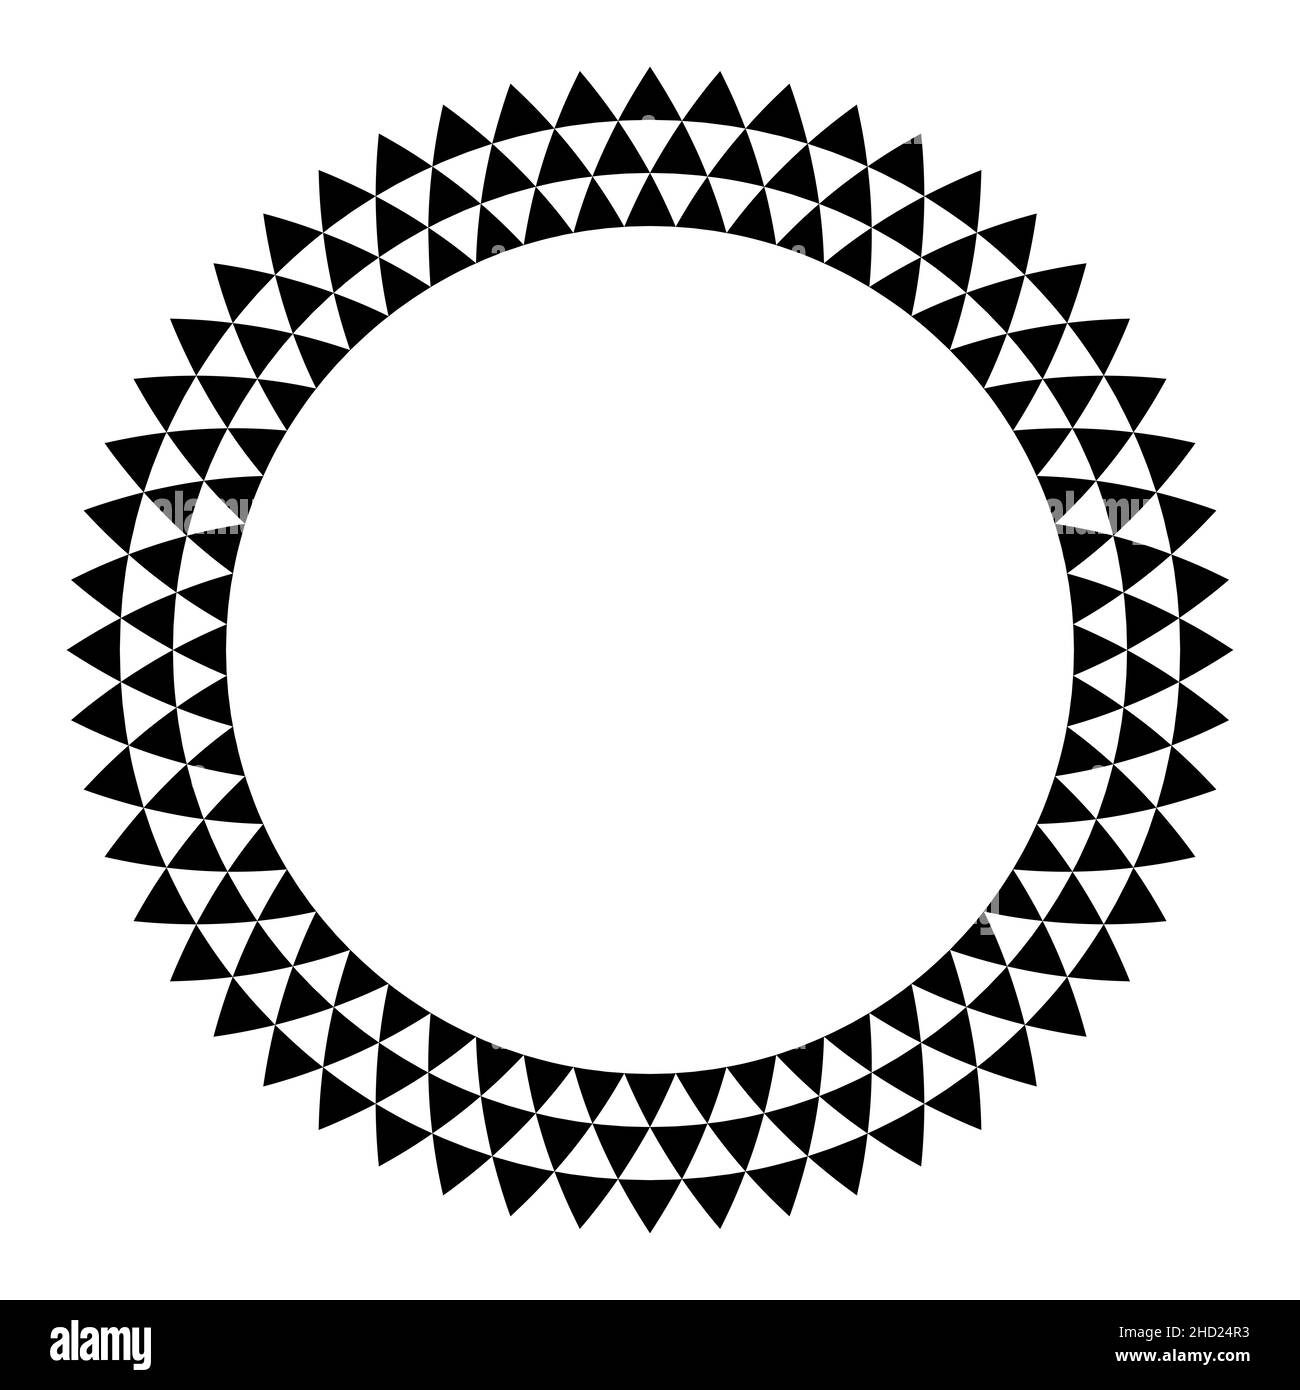 Kreisrahmen mit Dreieckmuster. Drei Reihen von schwarzen Dreiecken, die einen runden Rahmen mit gezackten und karierten Dreiecken bilden. Stockfoto